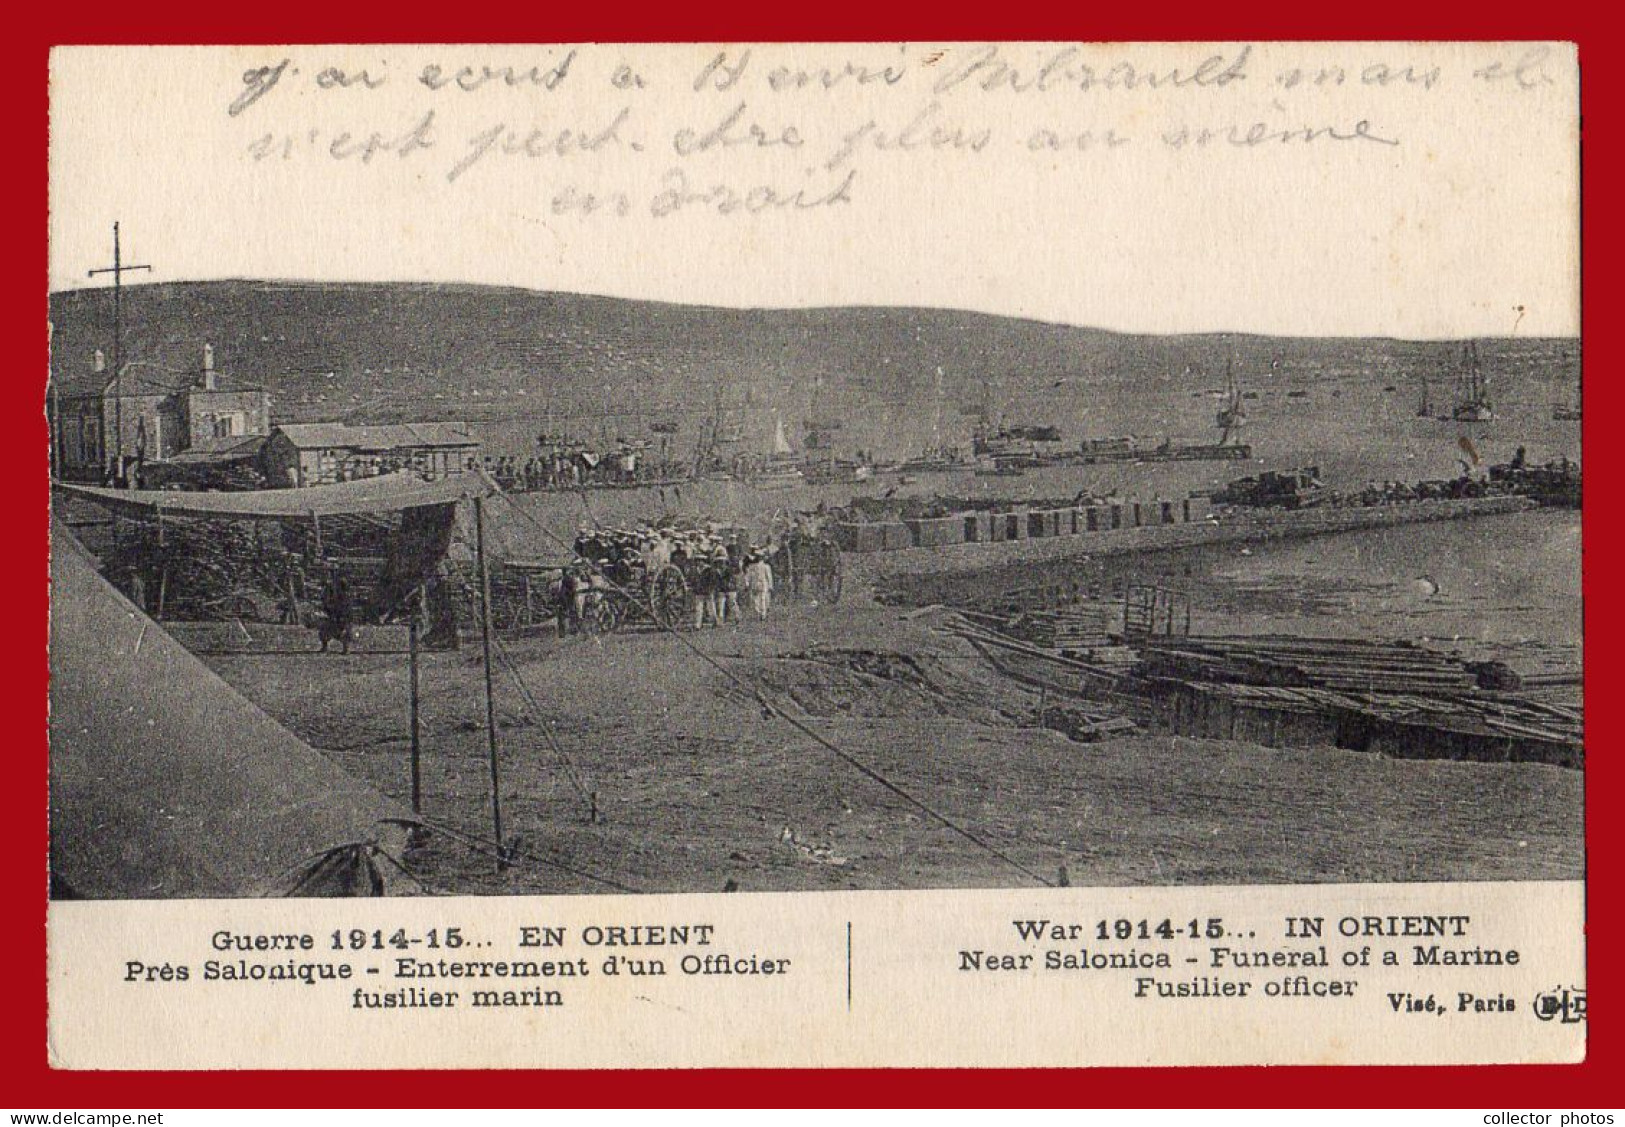 THESSALONIKI Salonica Greece 1910s (circa WWI). Lot of 8 vintage used postcards [de131]